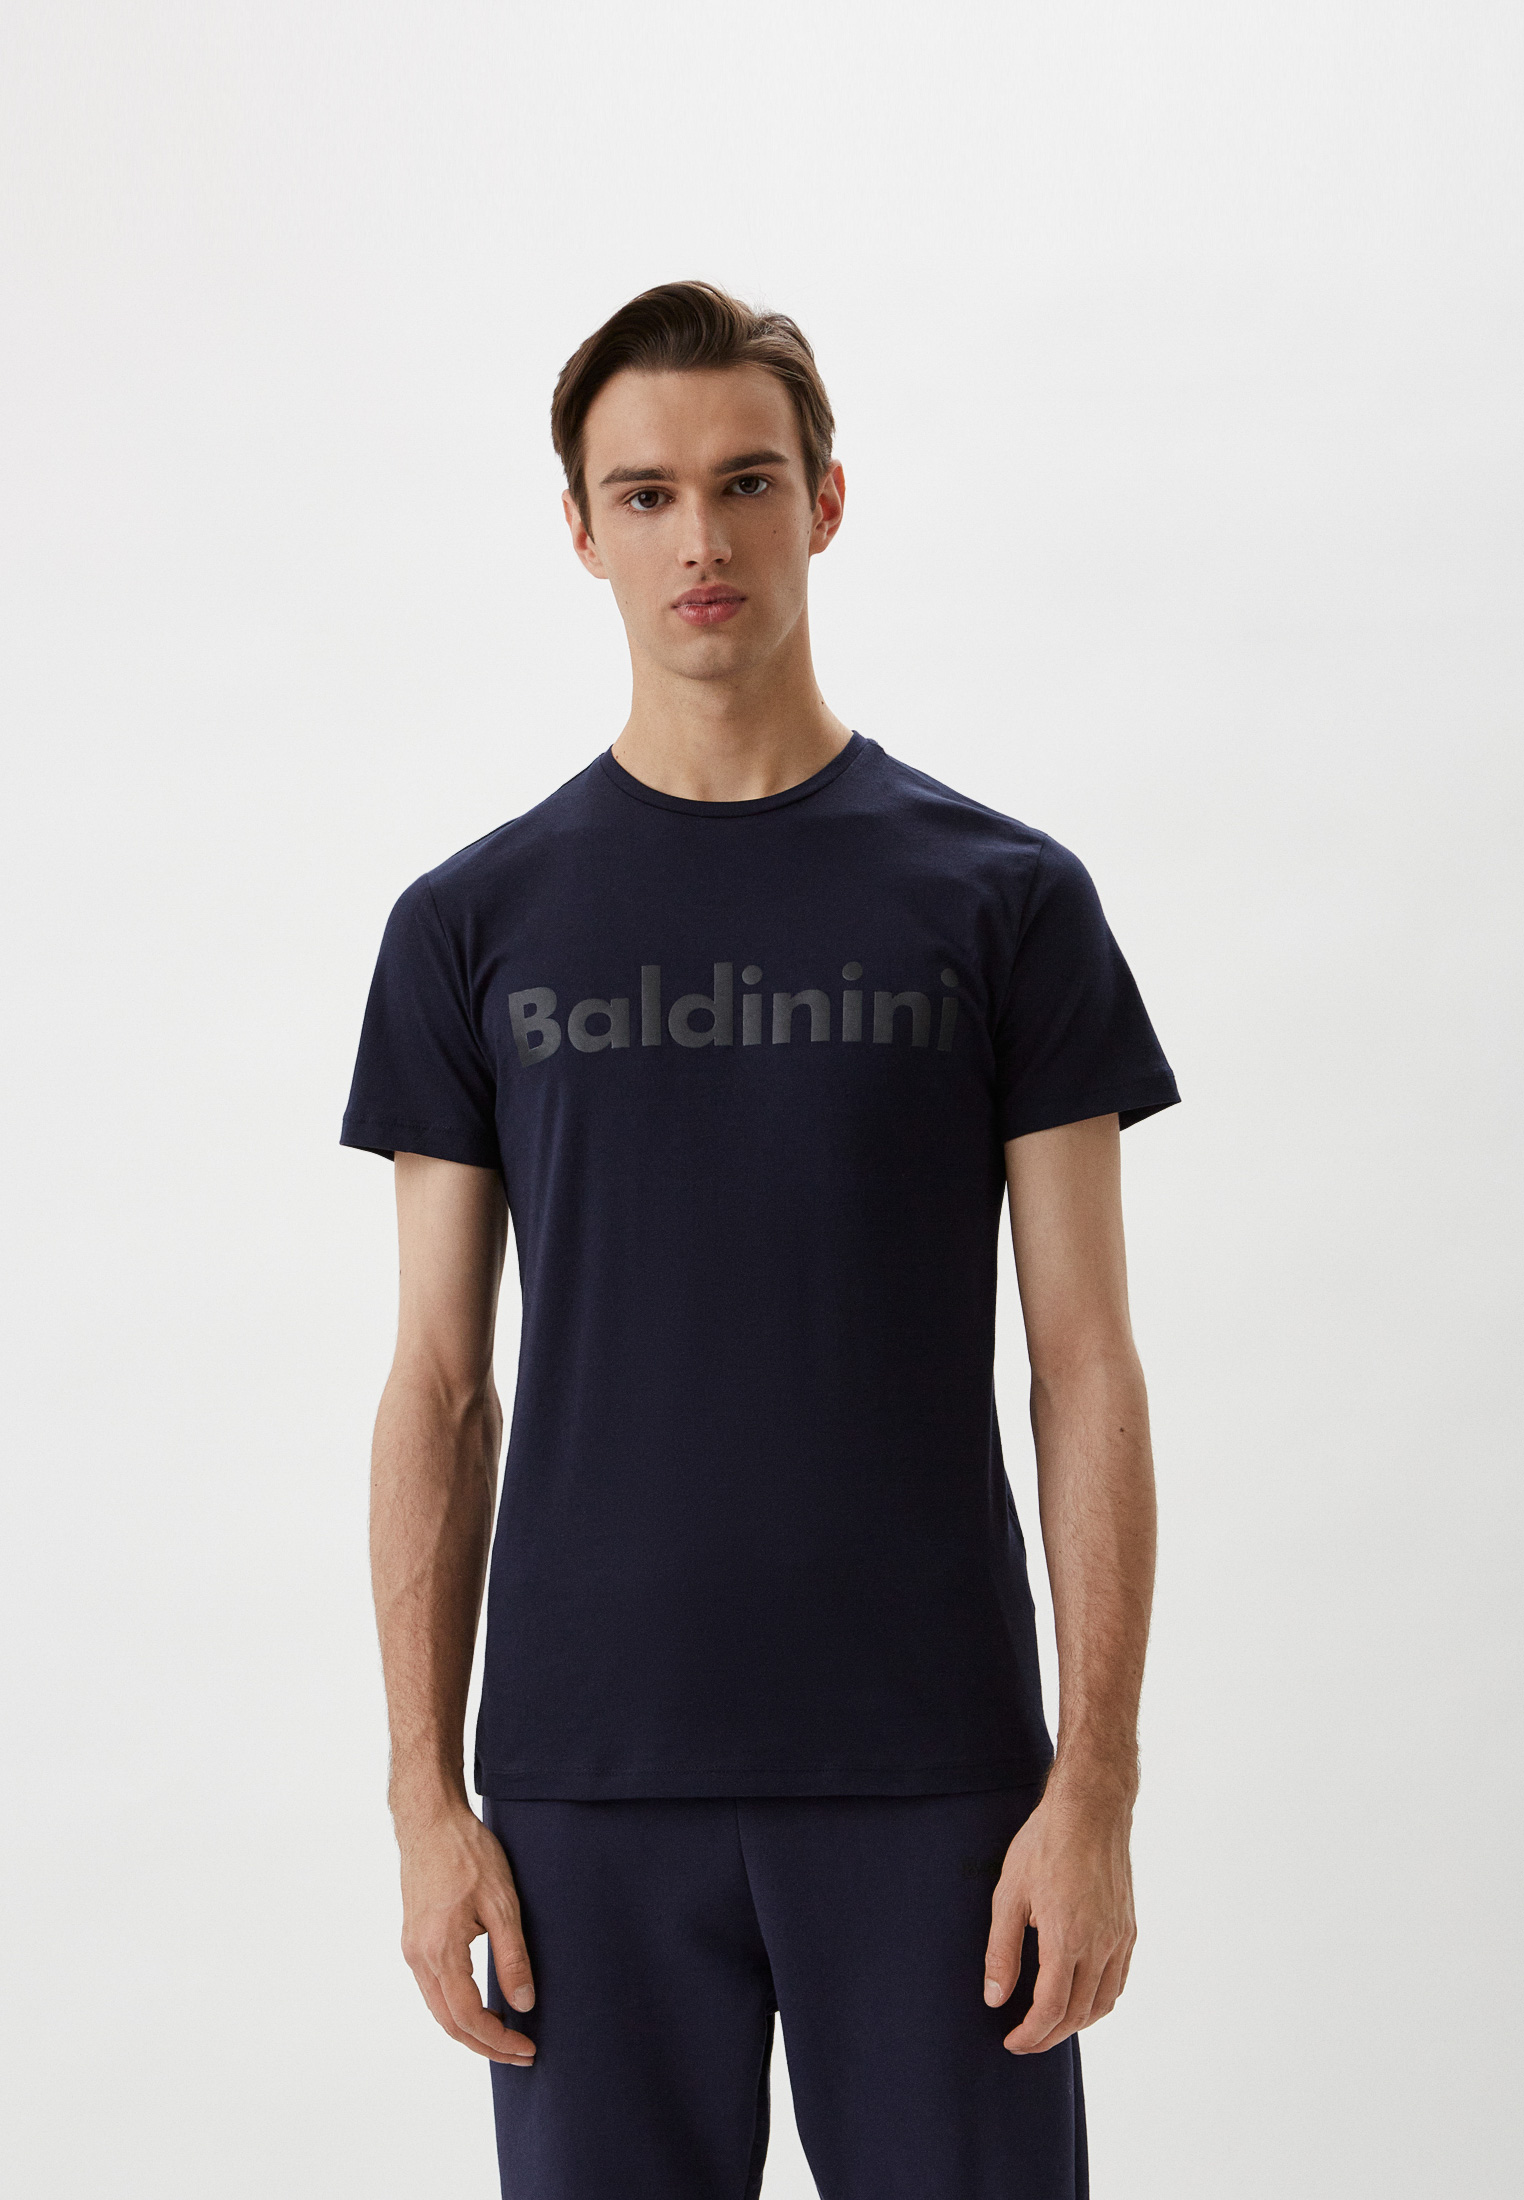 Мужская футболка Baldinini (Балдинини) M19: изображение 1